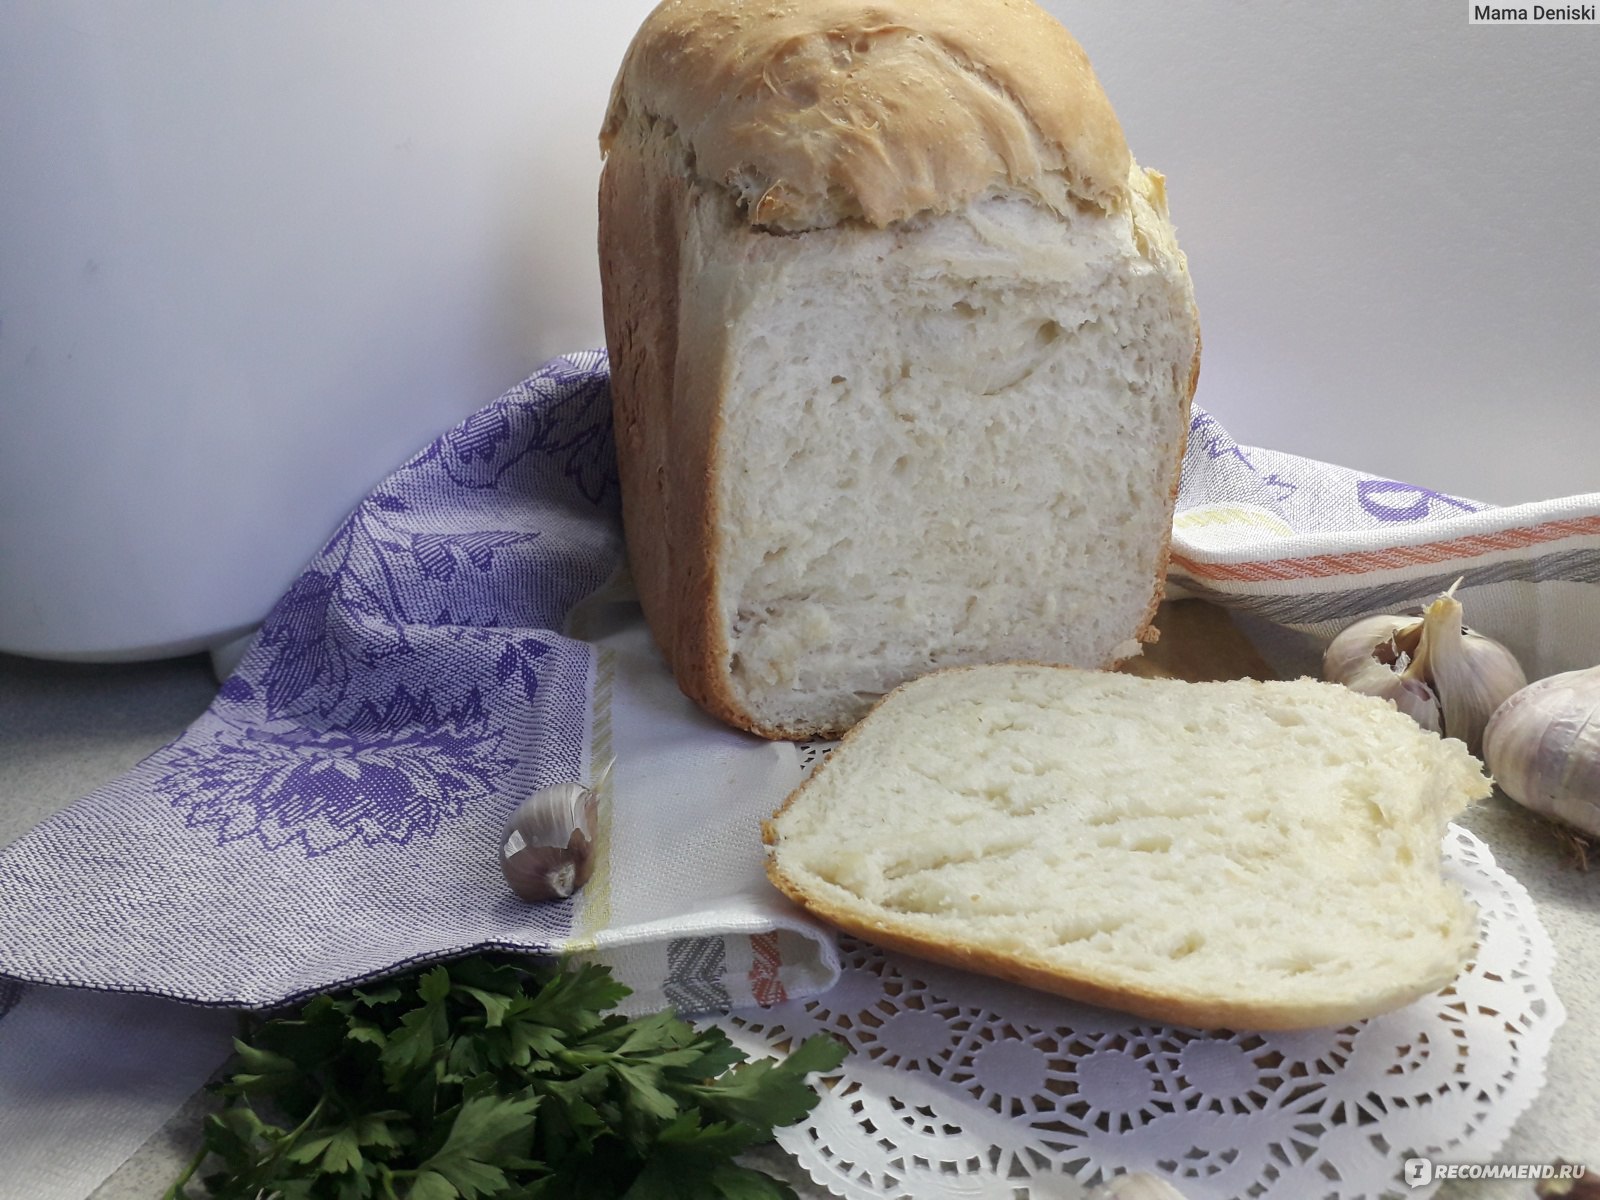 Чесночный хлеб в хлебопечке - рецепт с фото на luchistii-sudak.ru